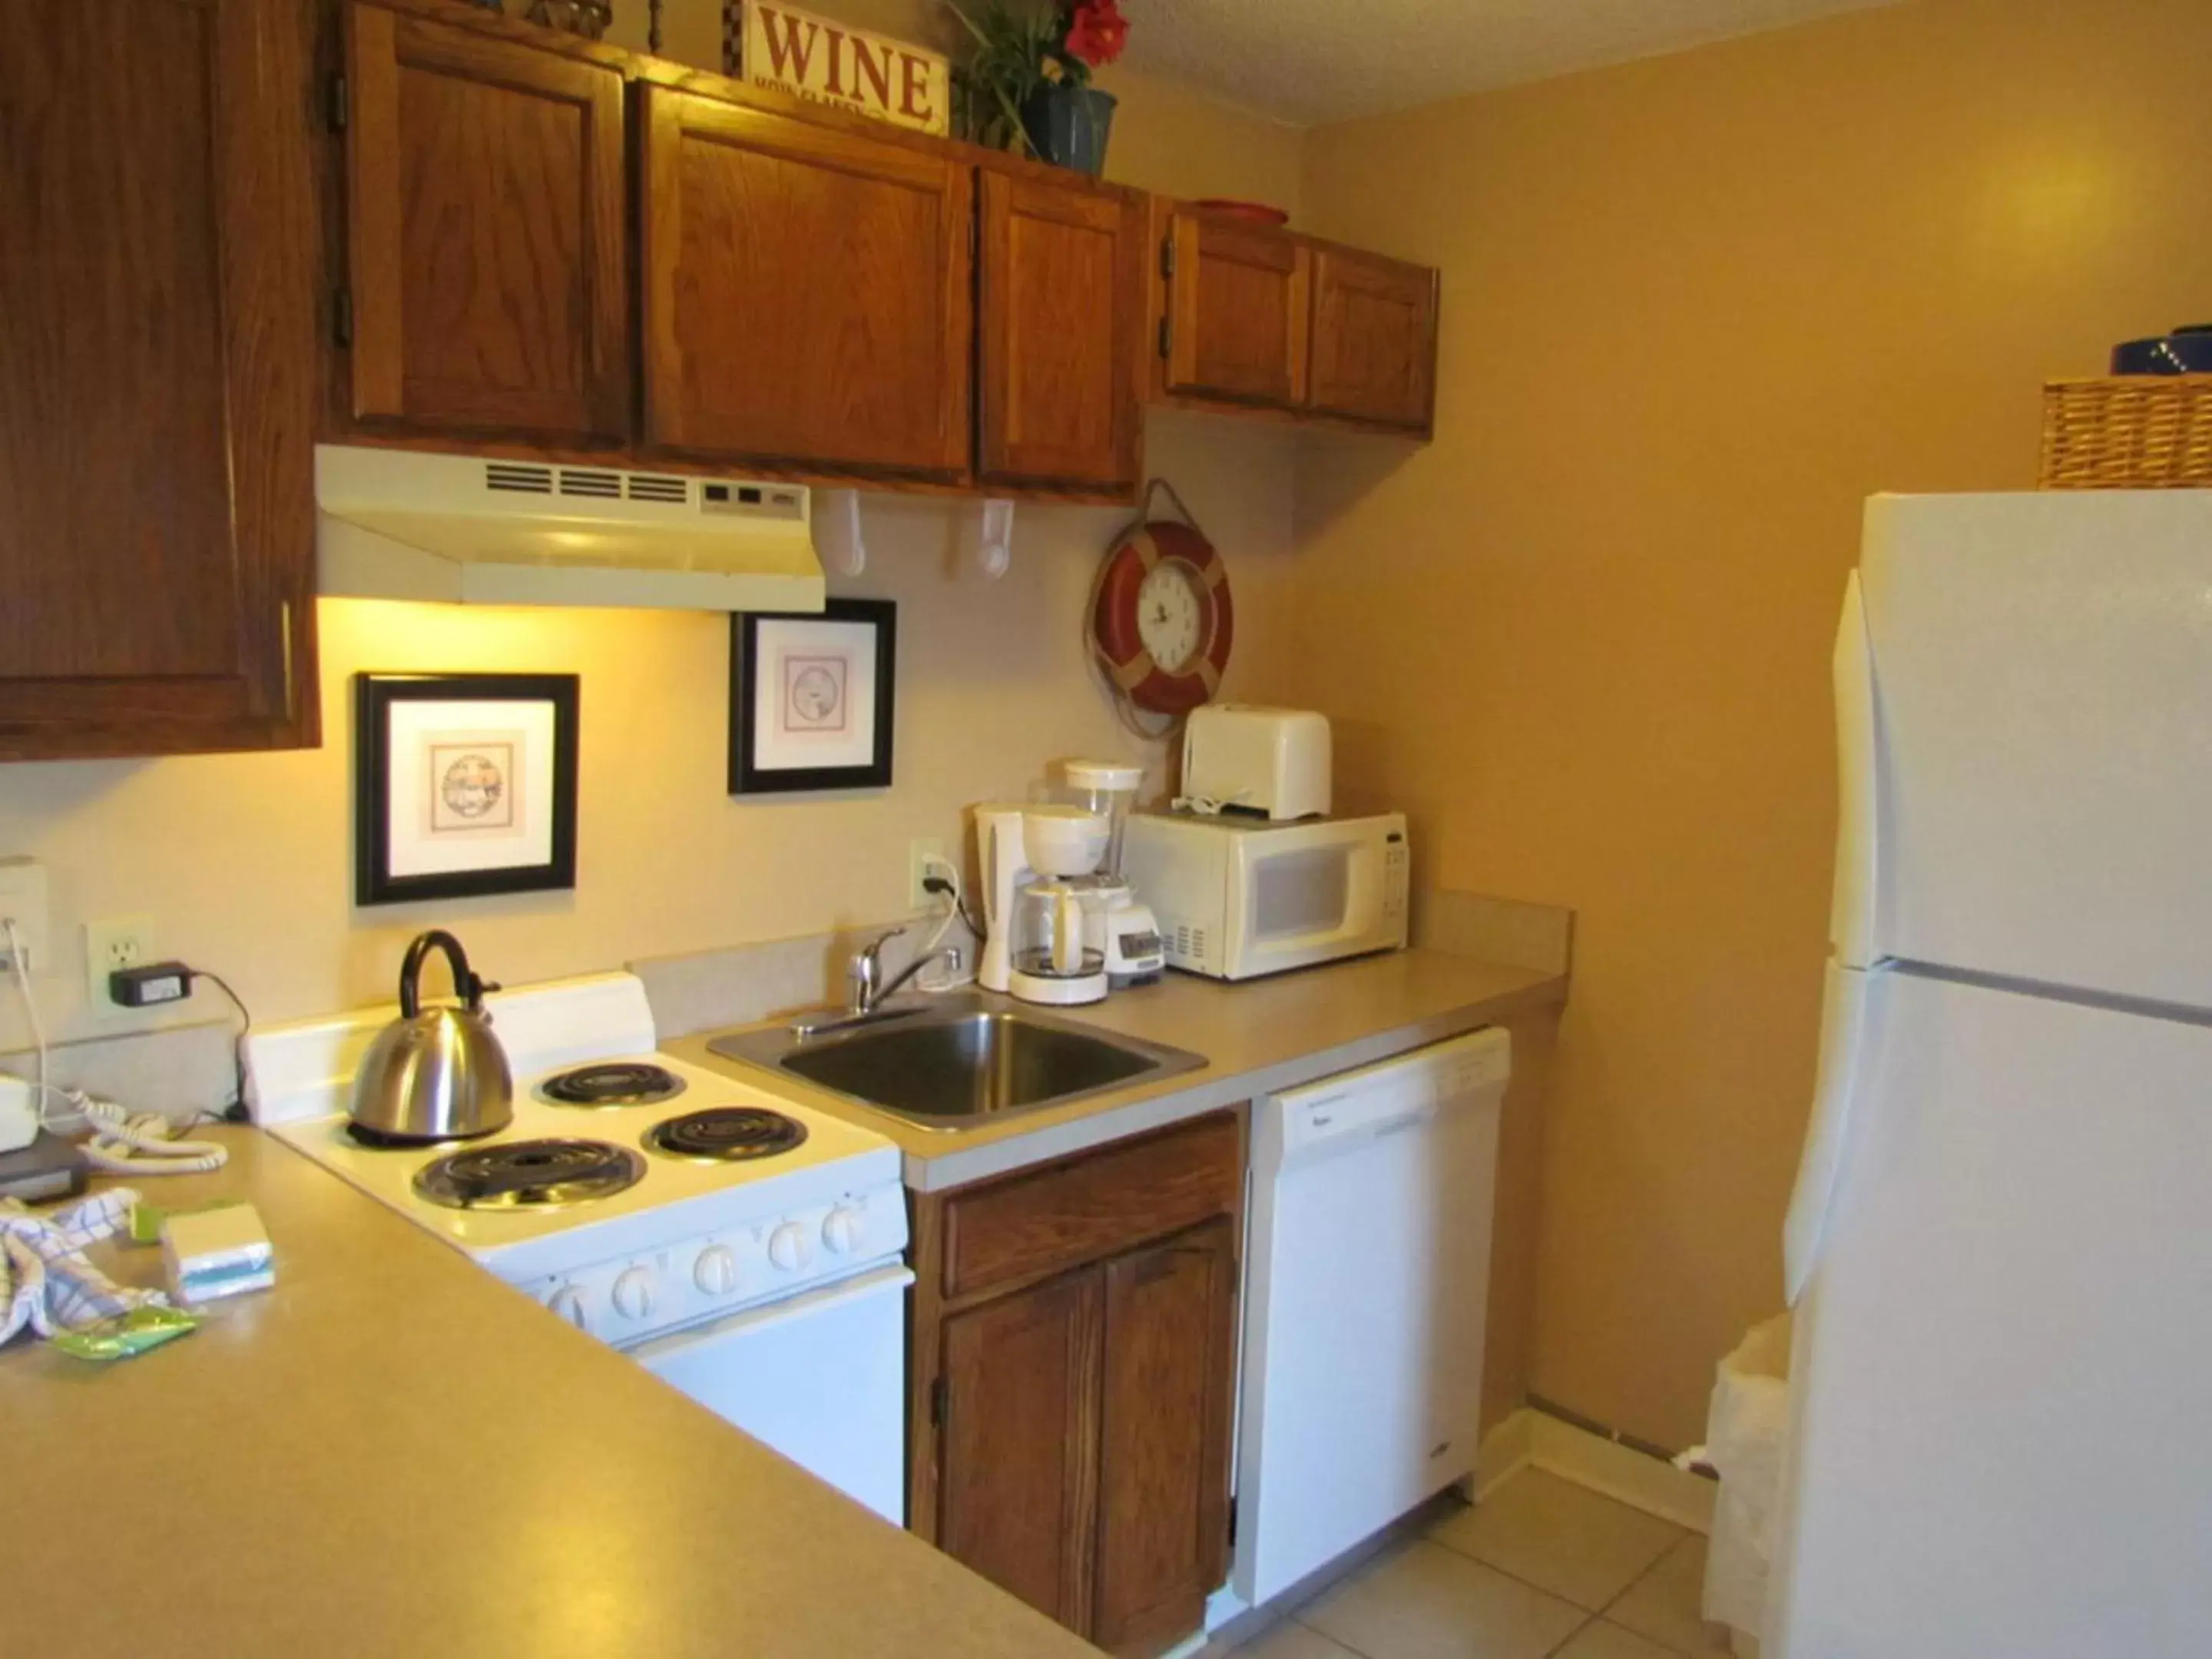 Kitchen or kitchenette in Myrtle Beach Resort